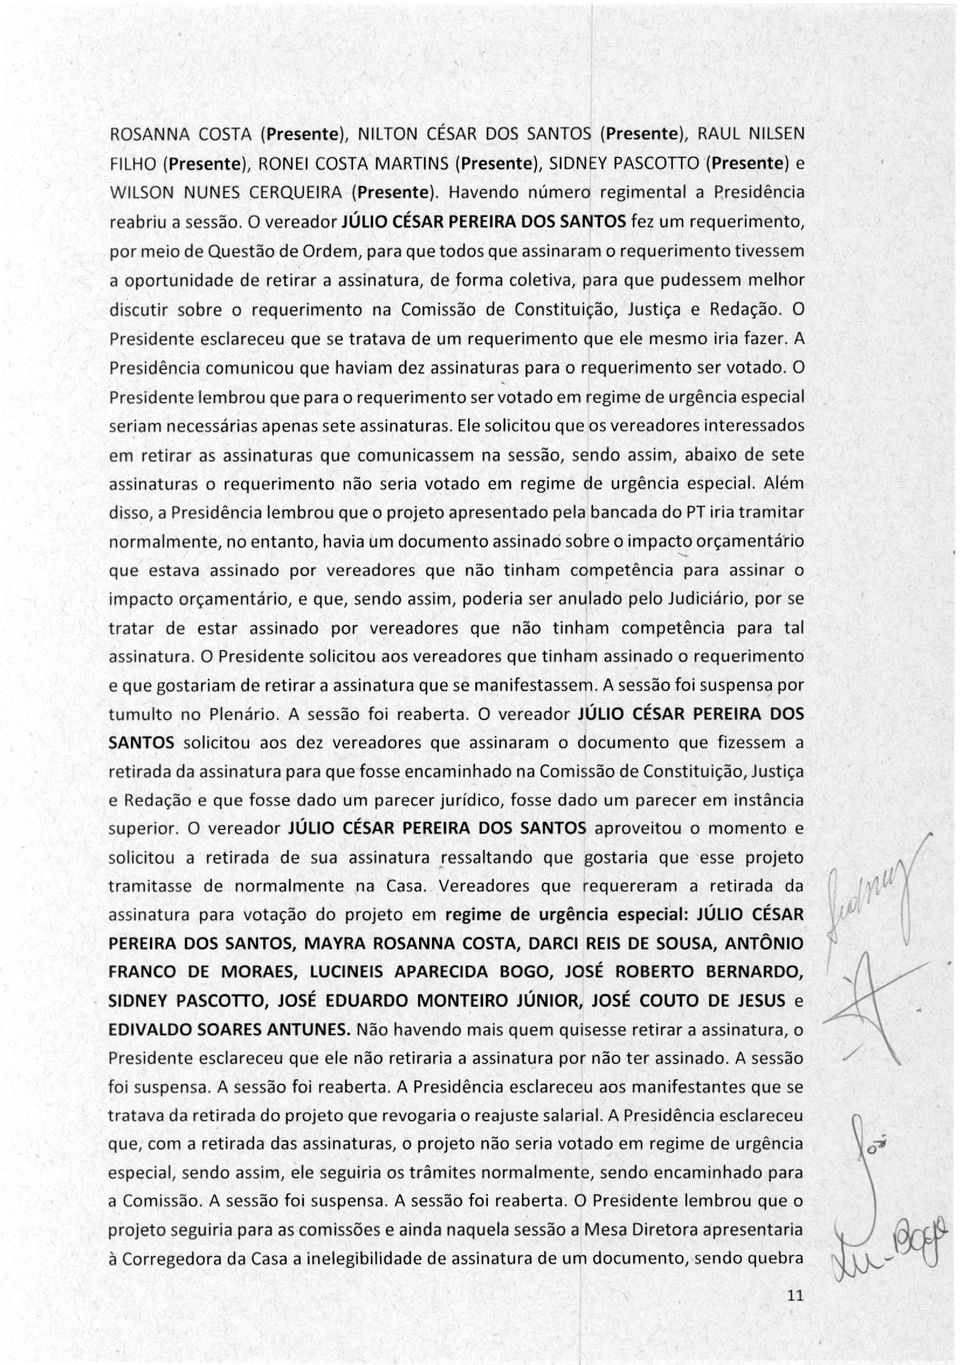 O vereador JÚLIO CÉSAR PEREIRA DOS SANTOS fez um requerimento, por meio de Questão de Ordem, para que todos que assinaram o requerimento tivessem a oportunidade de retirar a assinatura, de forma